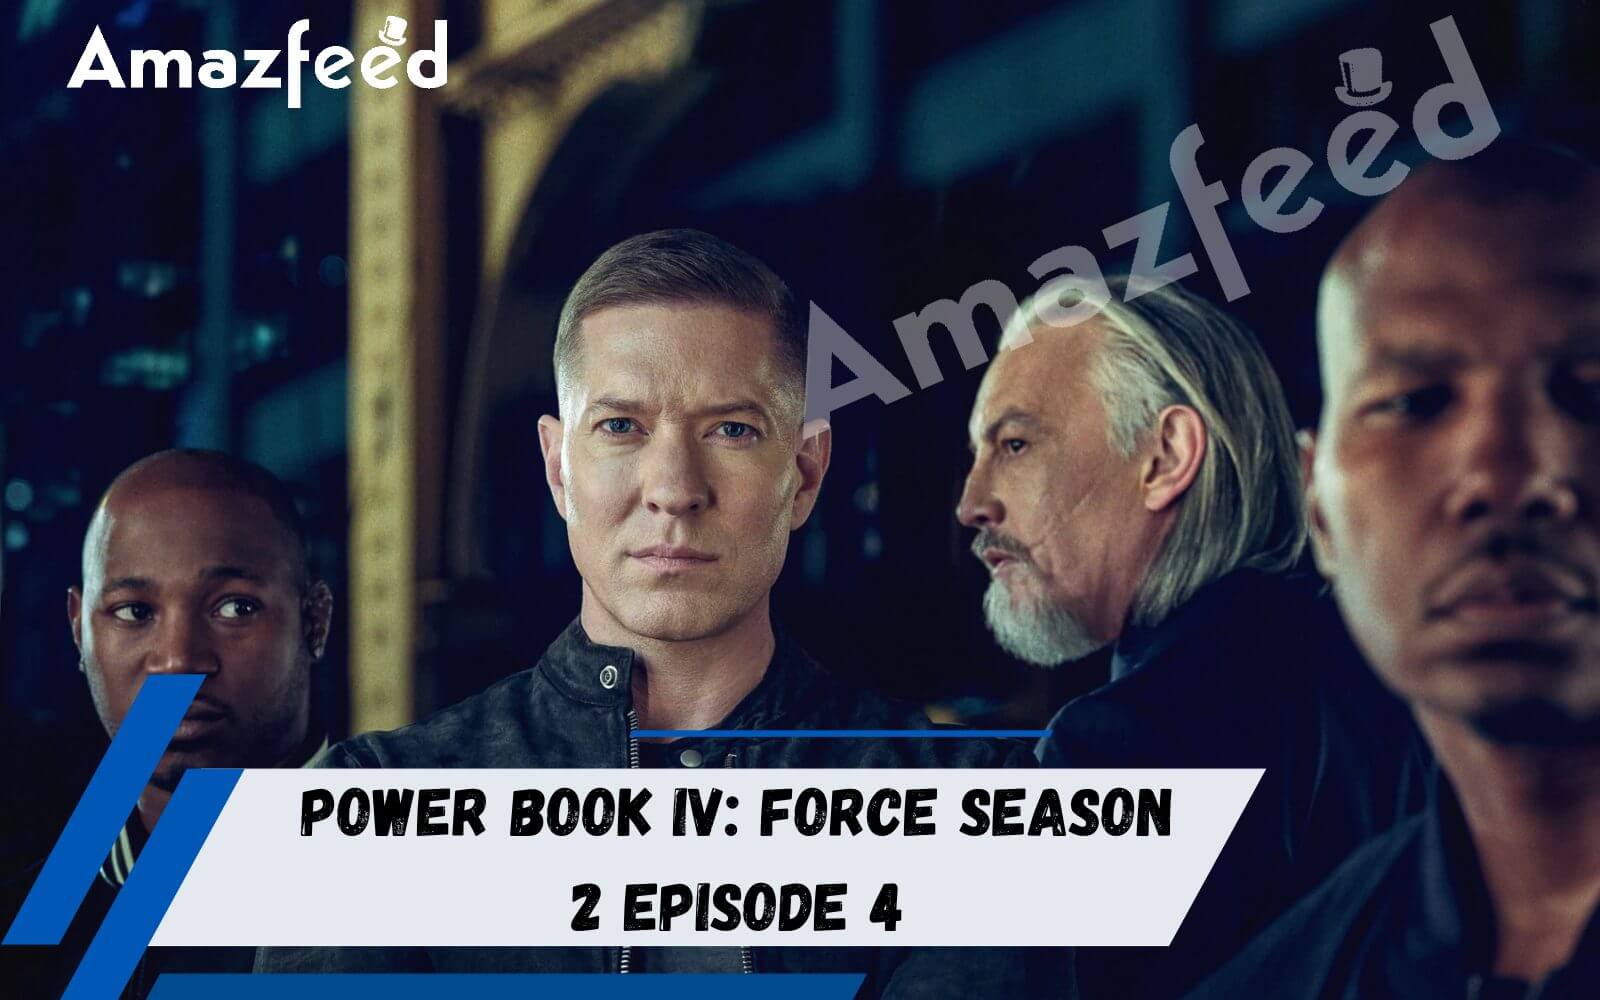 Power Book IV Force Season 2 Episode 4 spoiler (1)